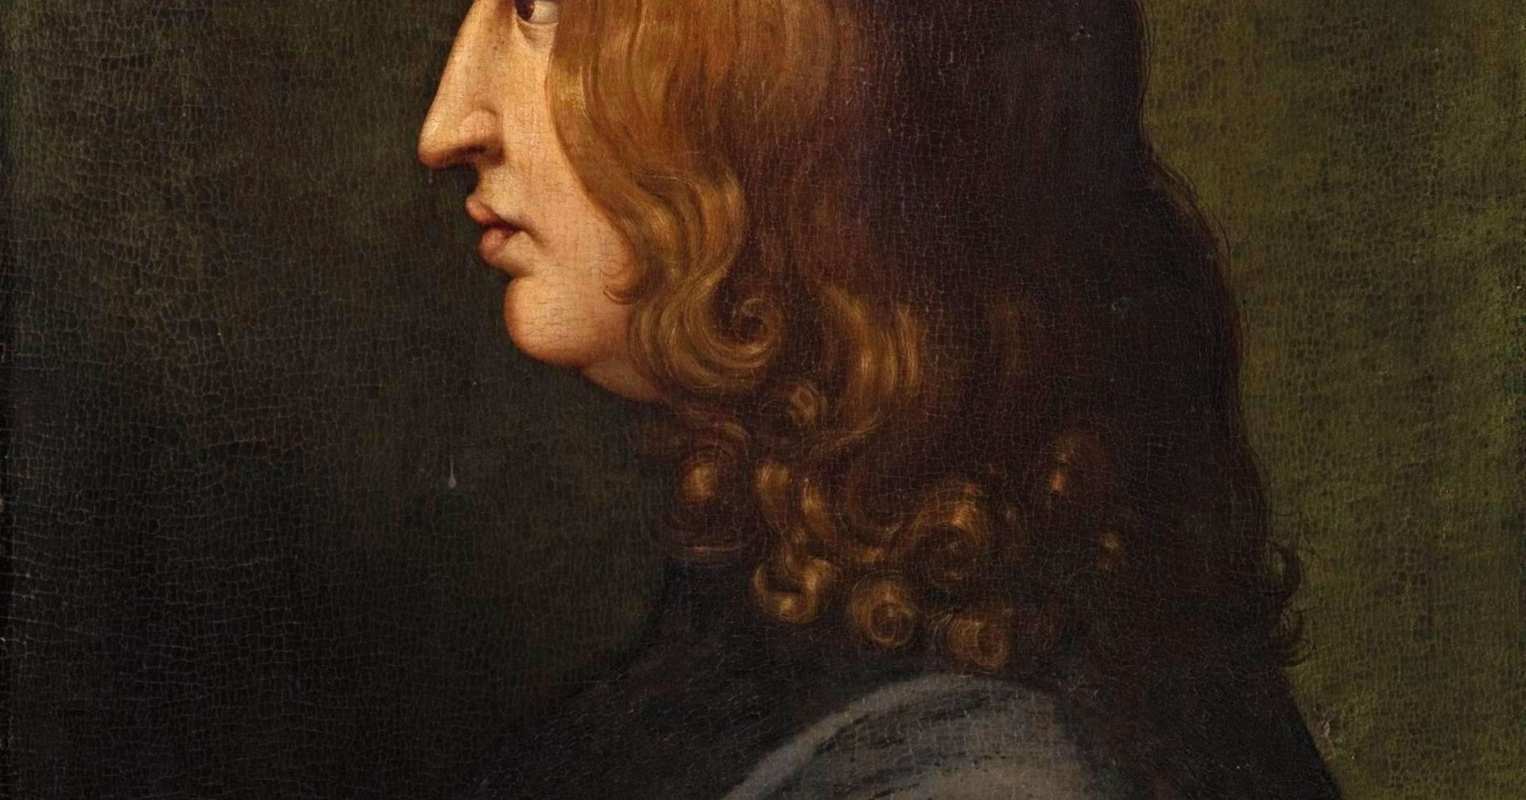 Pico della Mirandola at the Uffizi Gallery in Florence